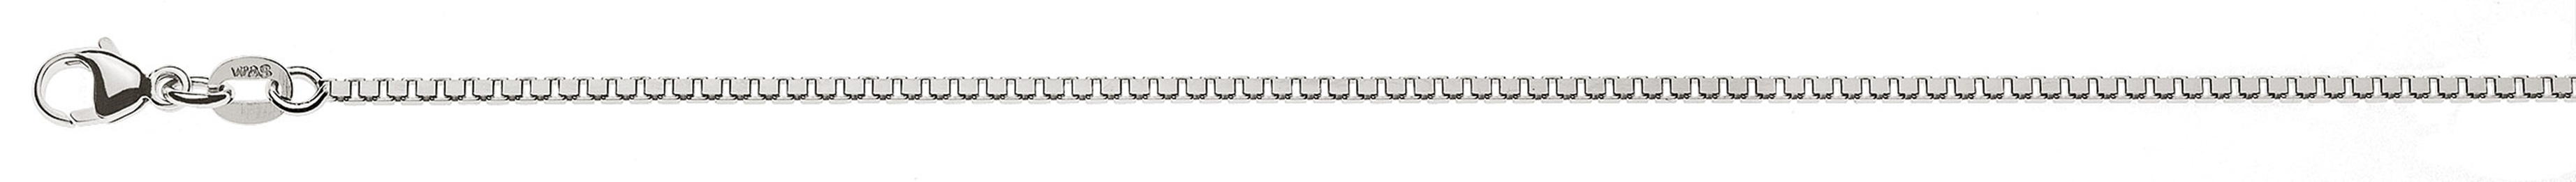 AURONOS Prestige Halskette Weissgold 18K Venezianerkette diamantiert 50cm 1.4mm